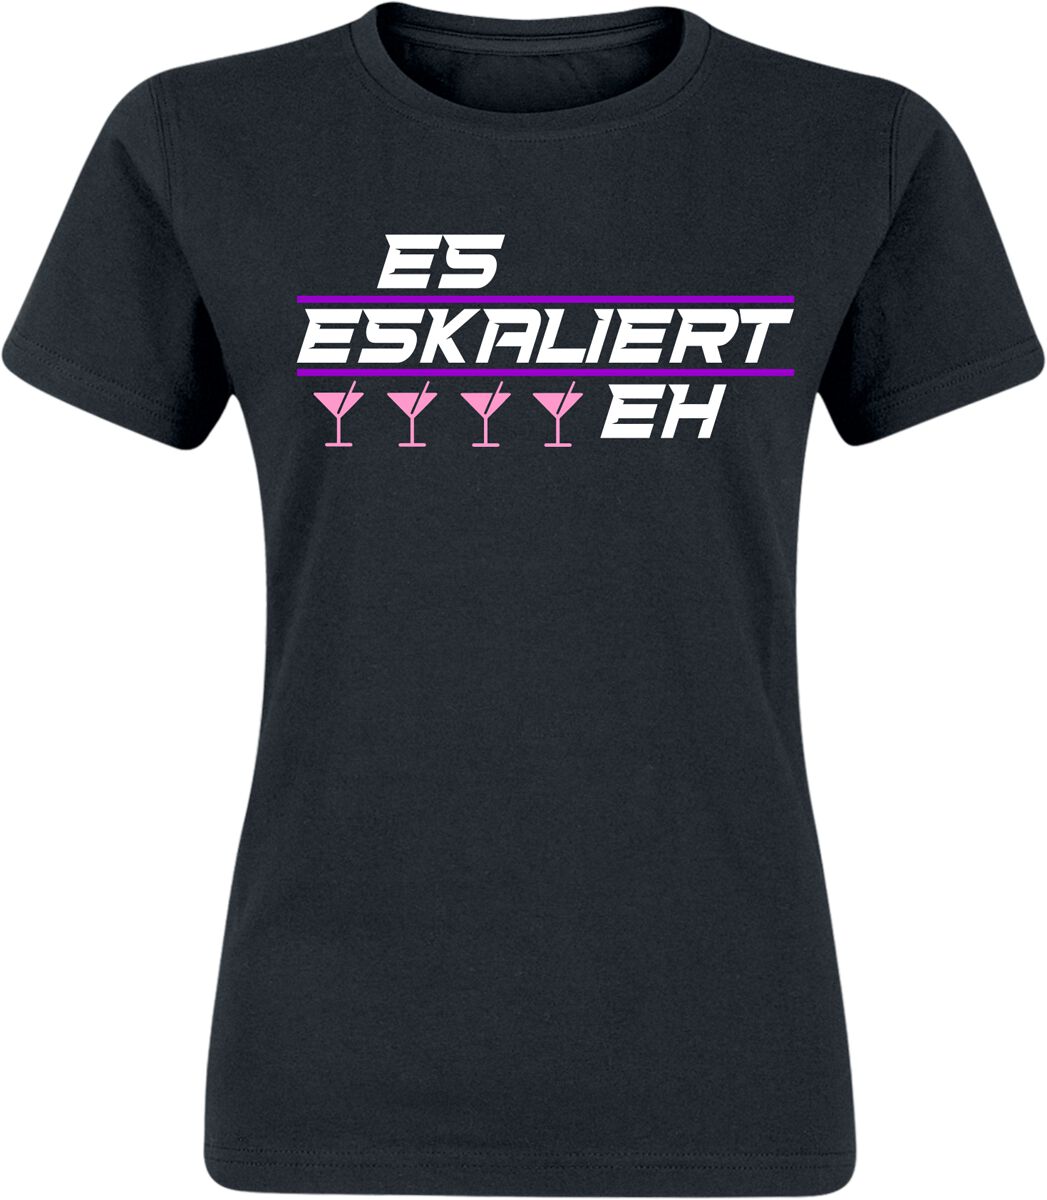 Alkohol & Party T-Shirt - Es eskaliert eh! - S bis XXL - für Damen - Größe L - schwarz